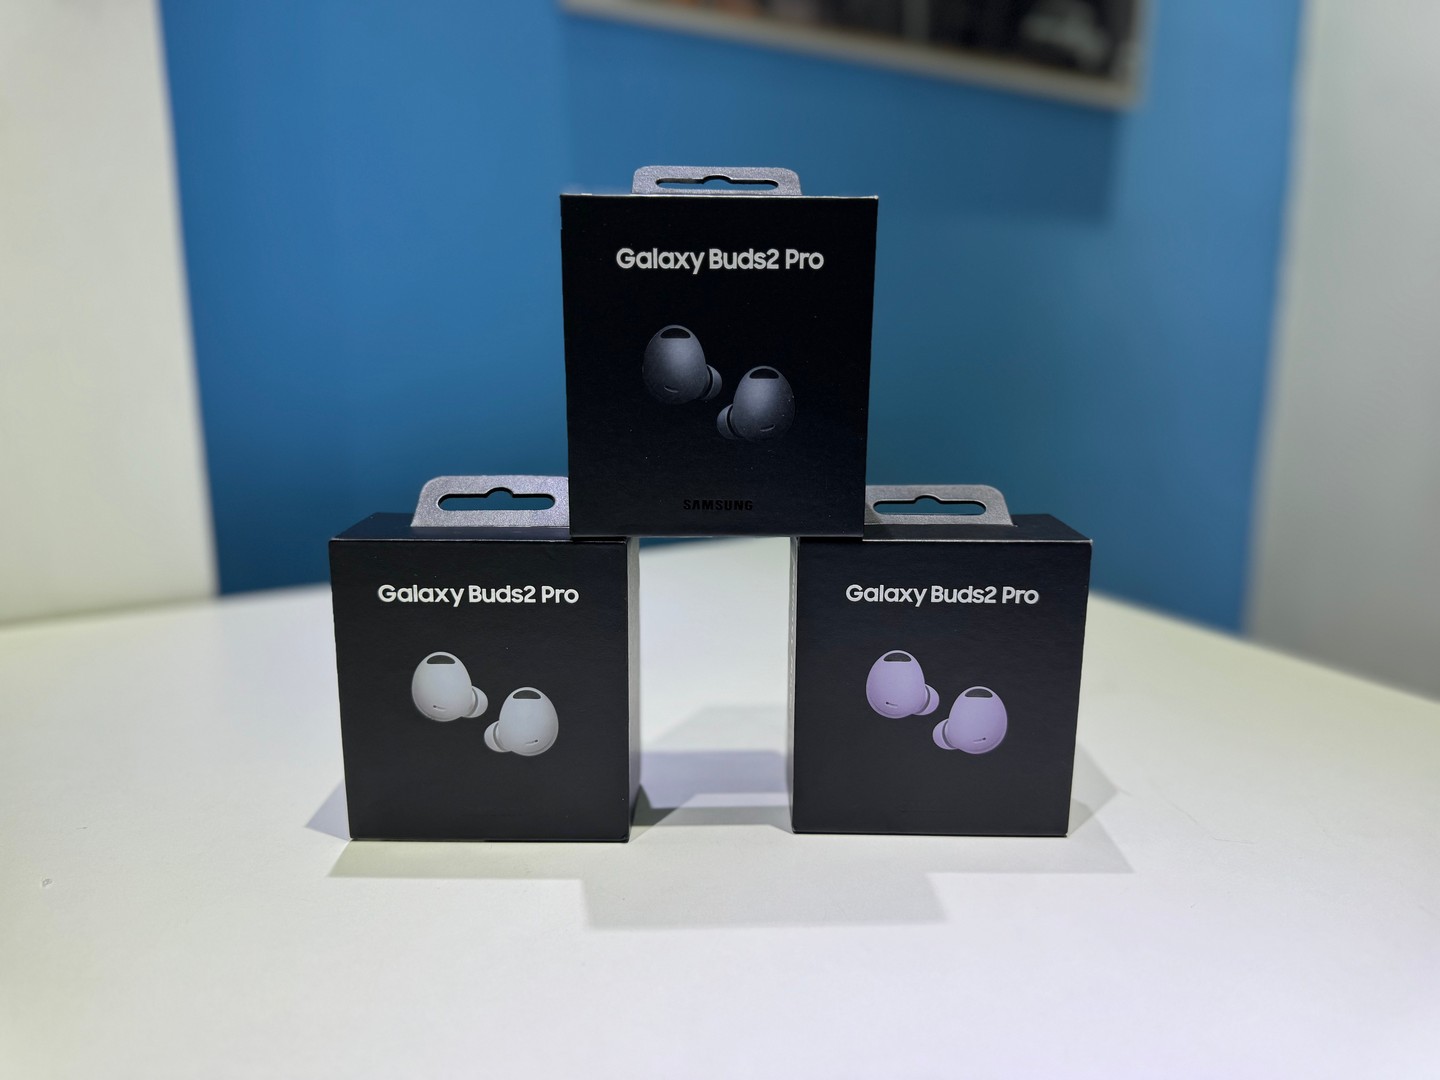 camaras y audio - Vendo Audífonos inalámbricos Galaxy Buds2 Pro Nuevo | OriginaleS RD$ 9,500 NEG